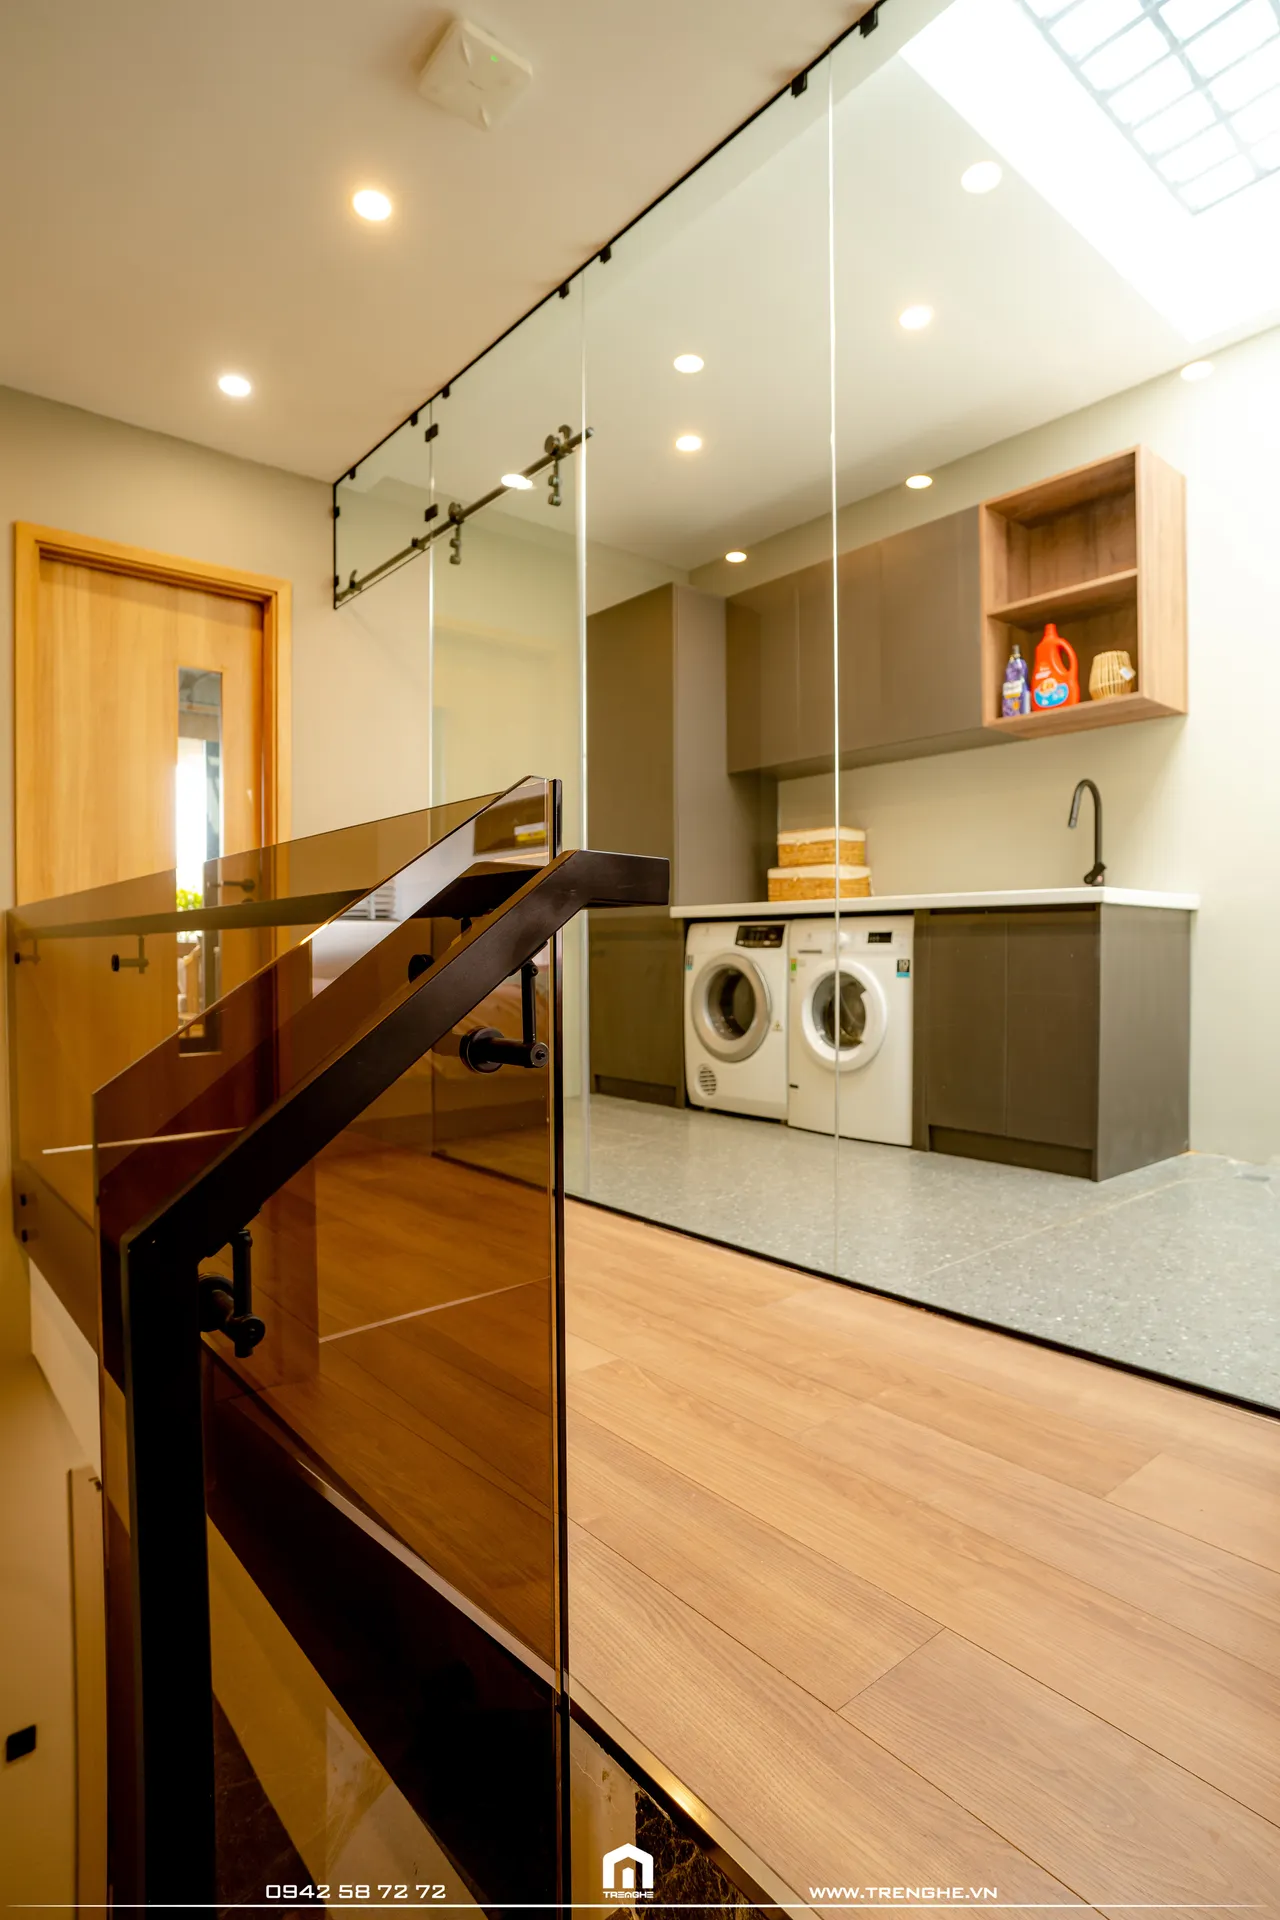 Hoàn thiện nội thất phòng giặt Nhà phố Bà Rịa 400m2 phong cách Hiện đại Modern